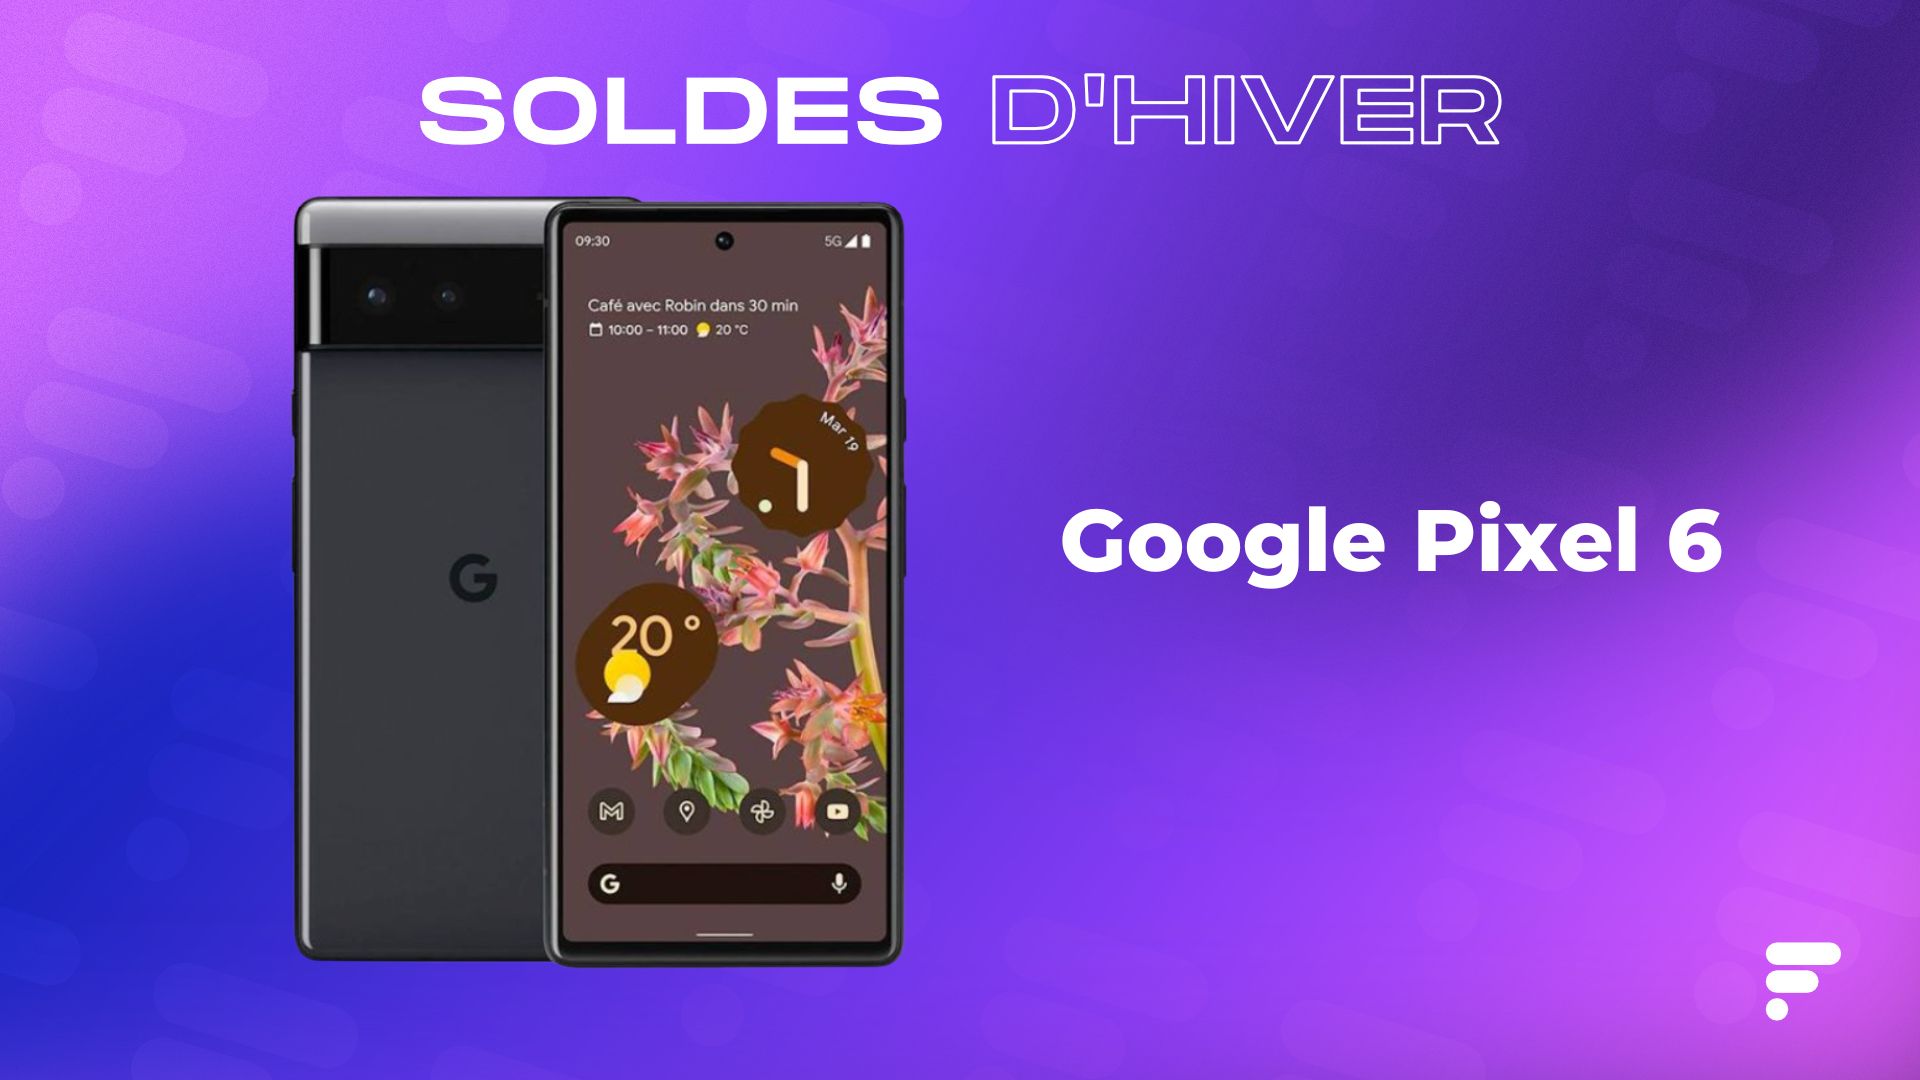 Le Google Pixel 6 a attendu la fin des soldes pour être à son prix le plus bas